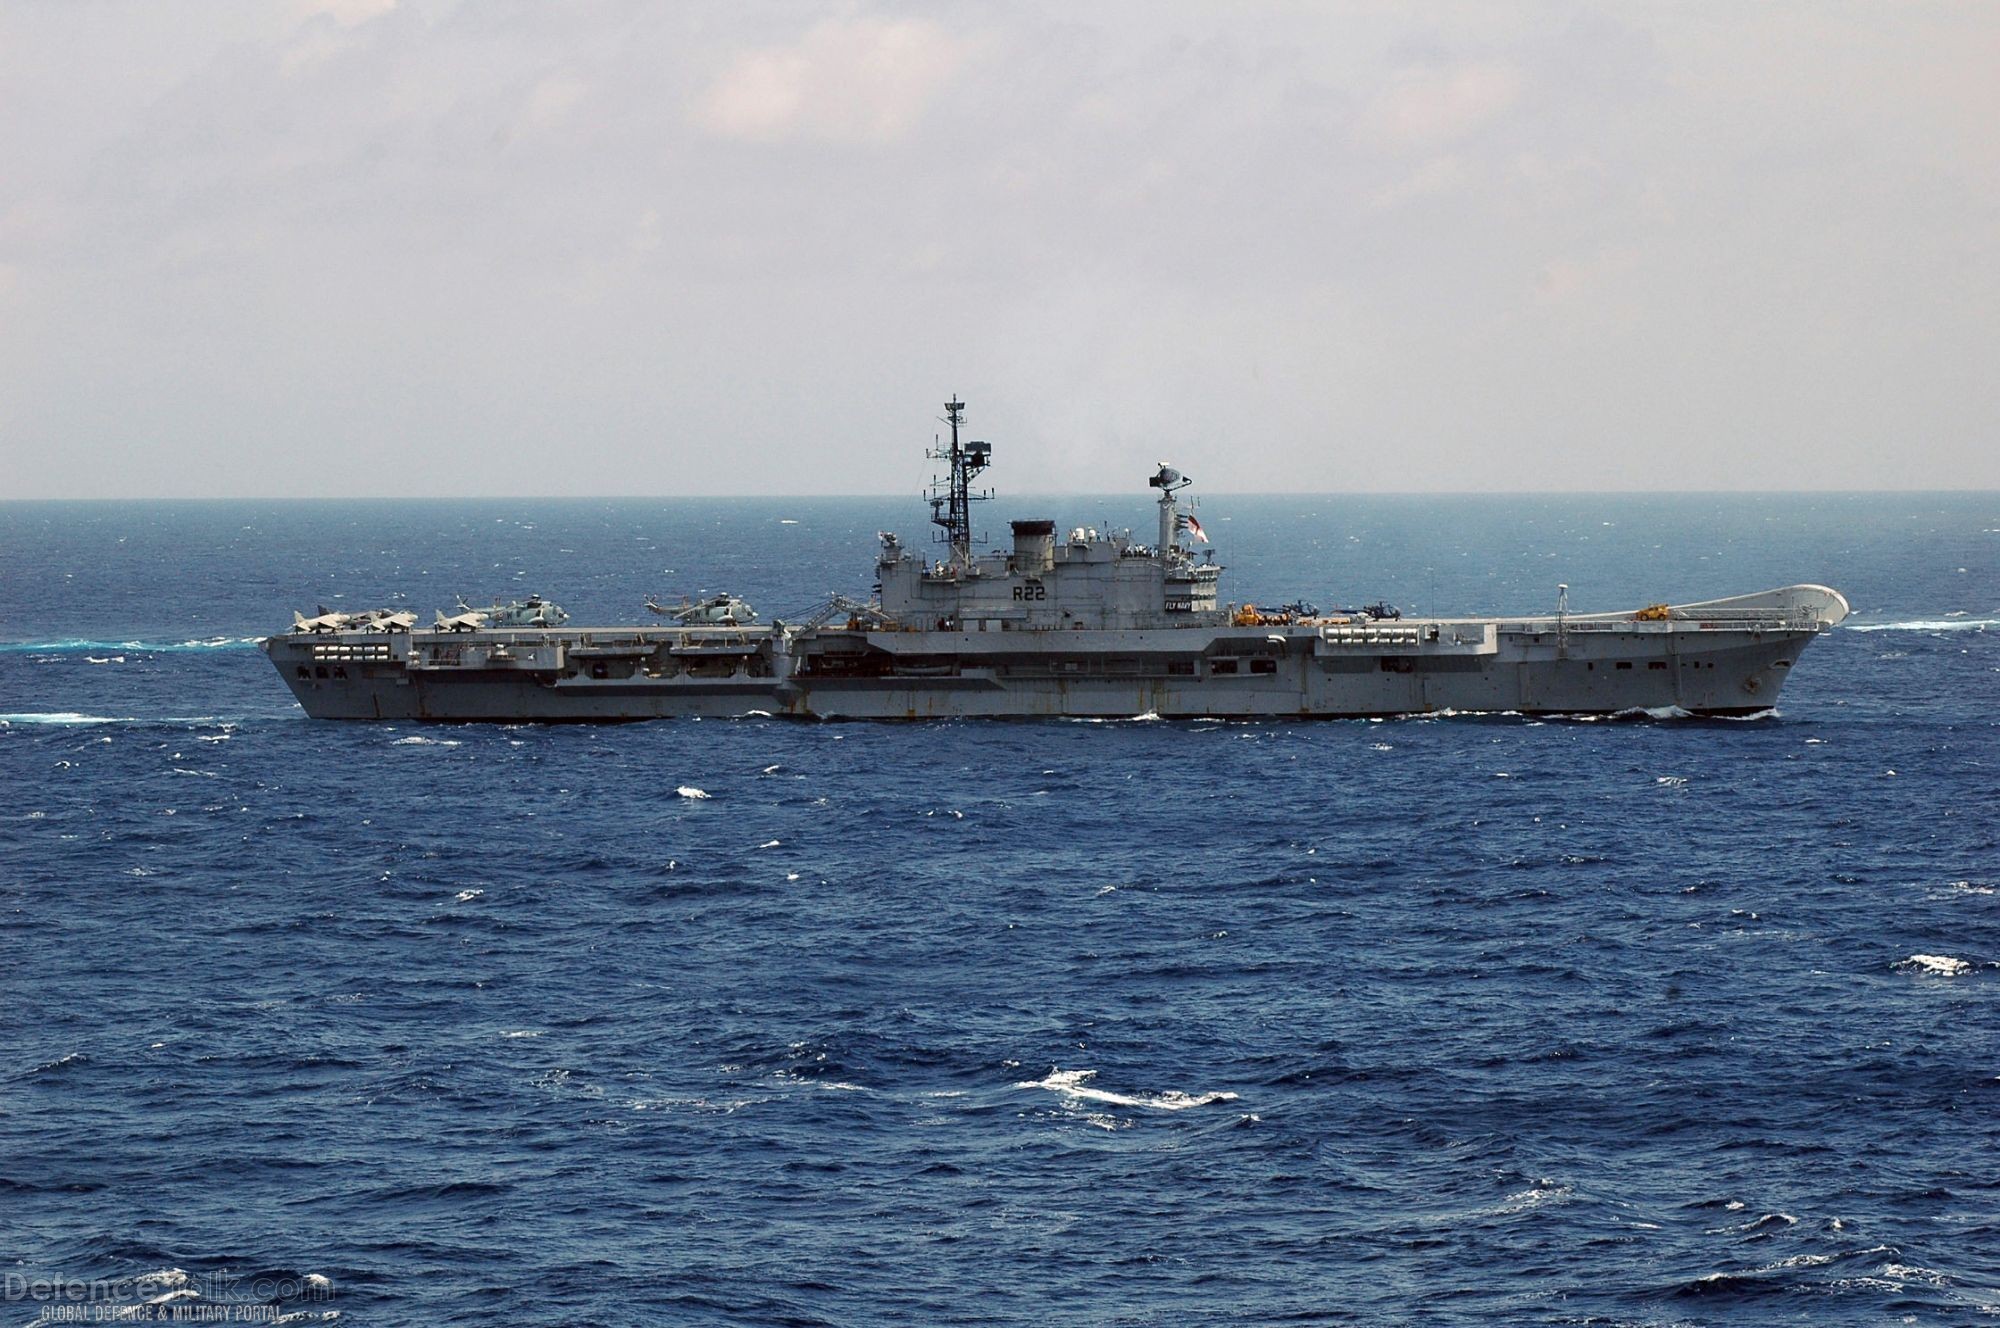 Indian Navy aircraft carrier INS Viraat - Malabar 07 Naval Exercise